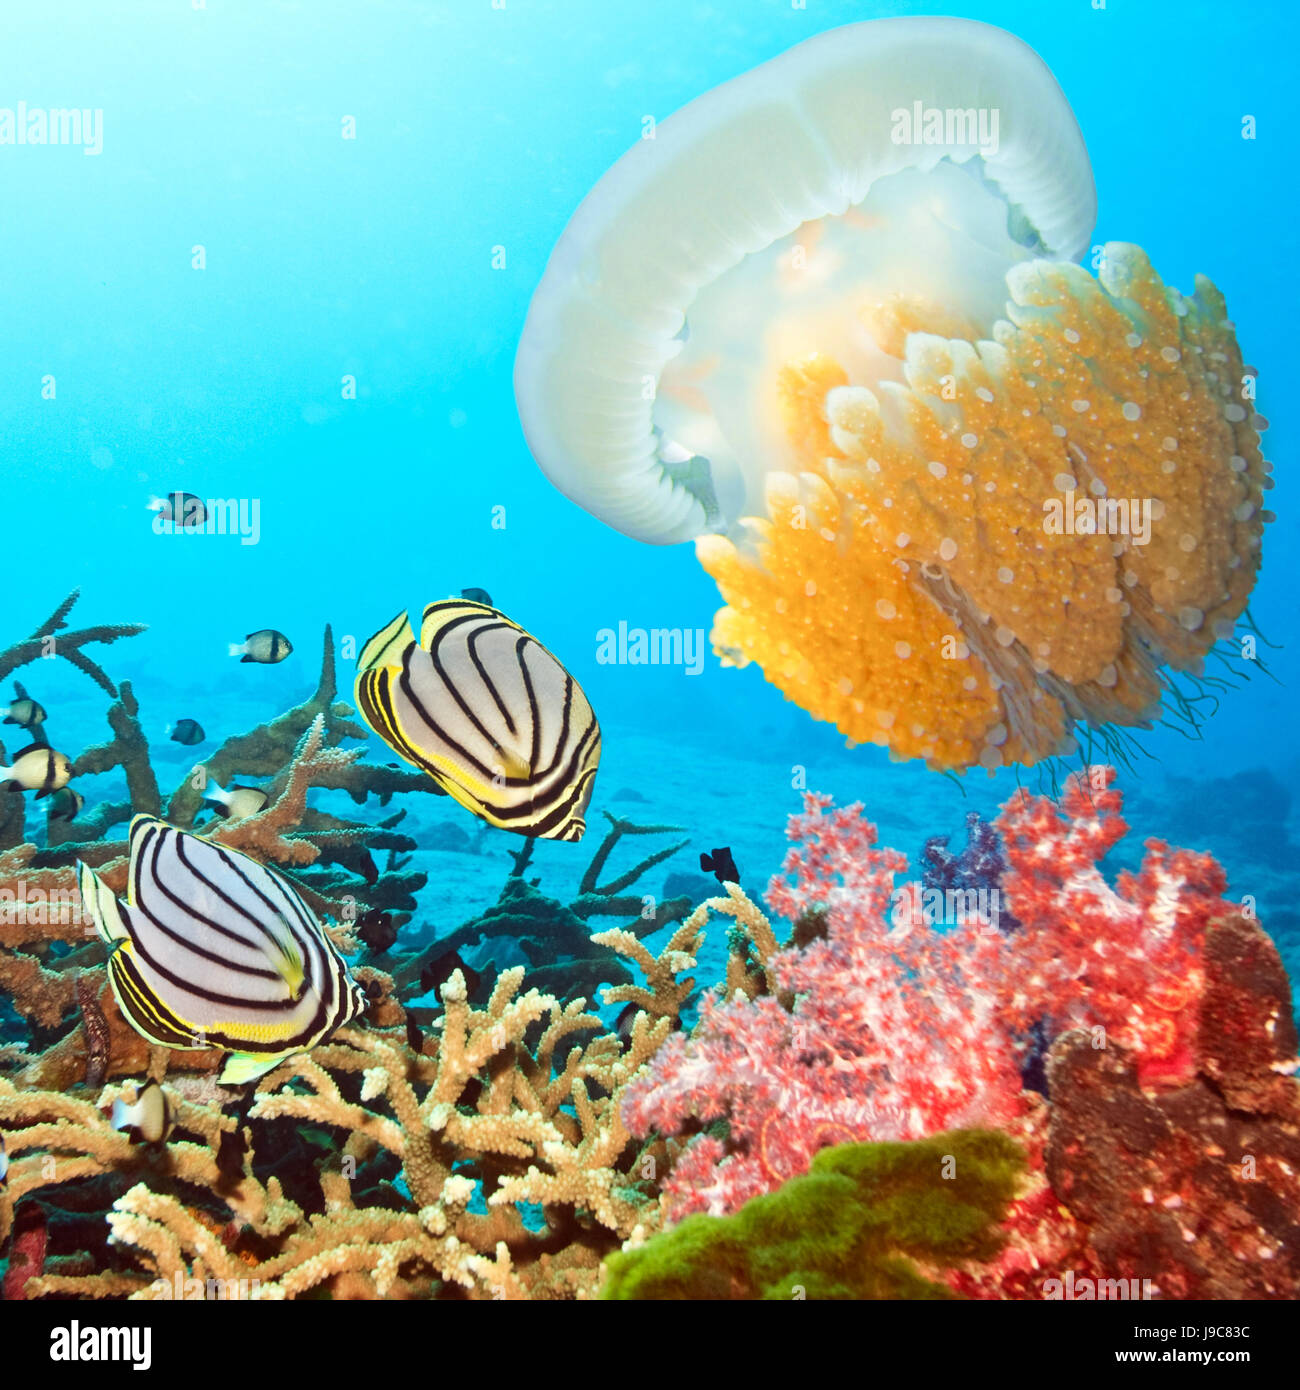 fish, underwater, tropical, diving, salt water, sea, ocean, water, nature, Stock Photo